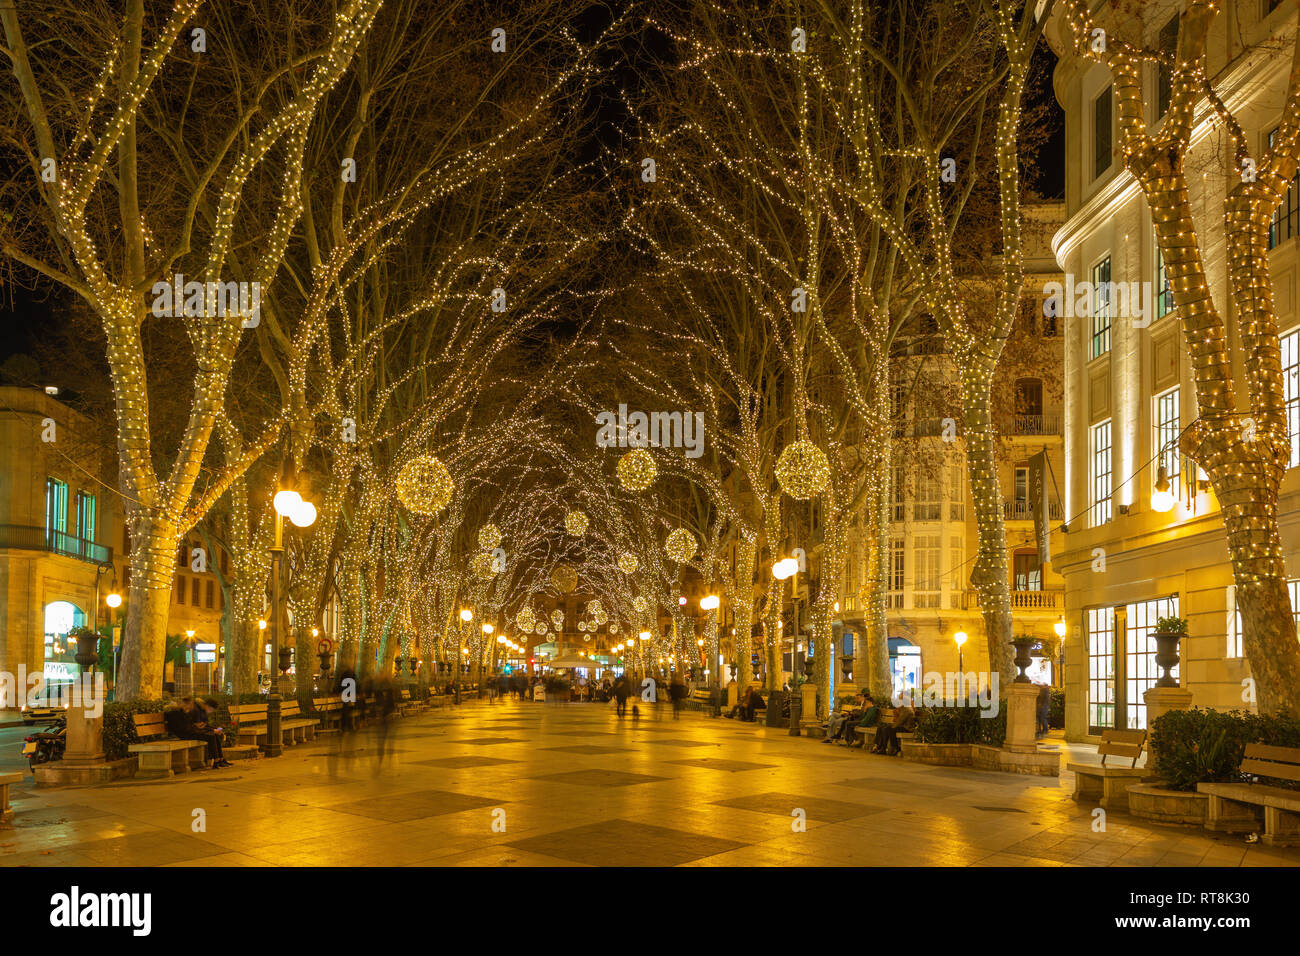 Palma de Mallroca - la decoración de Navidad en las calles de la ciudad vieja. Foto de stock